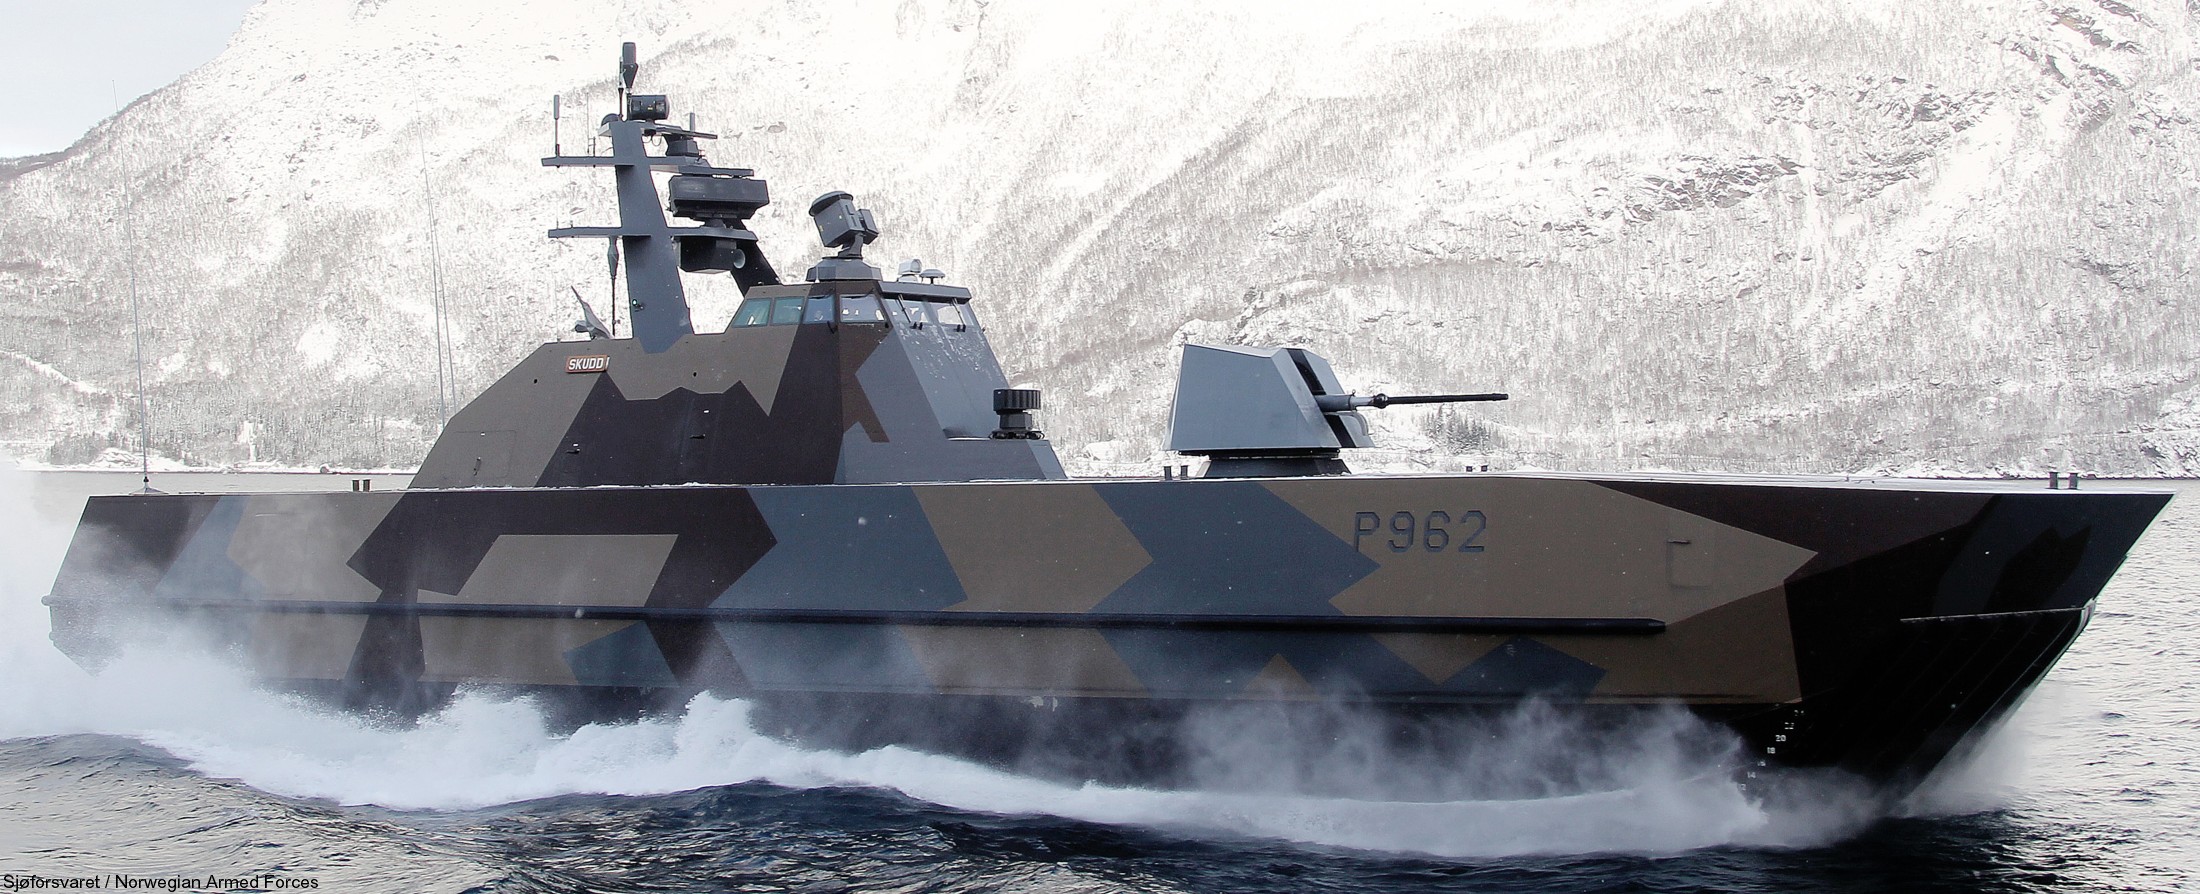 skjold class corvette p-962 hnoms knm skudd royal norwegian navy sjoforsvaret 09c